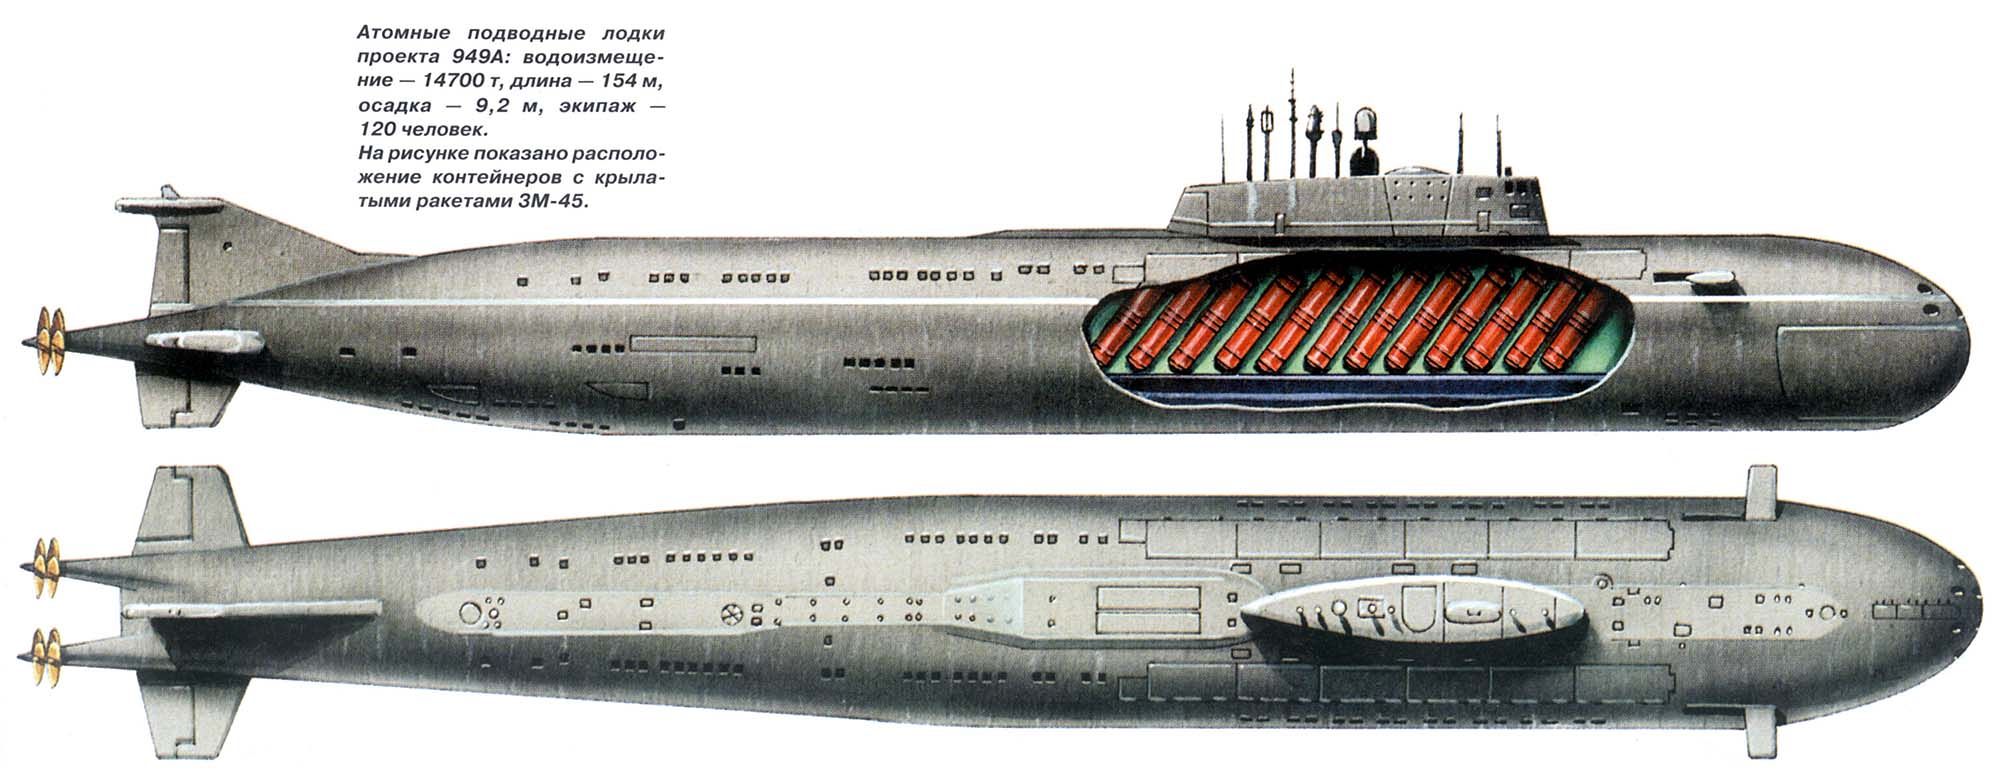 Пл пр т. Подводная лодка 949а проекта Антей. Проект подводной лодки 949 а Антей. Подводная лодка пр.949а "Курск". Проект 949а Антей в разрезе.